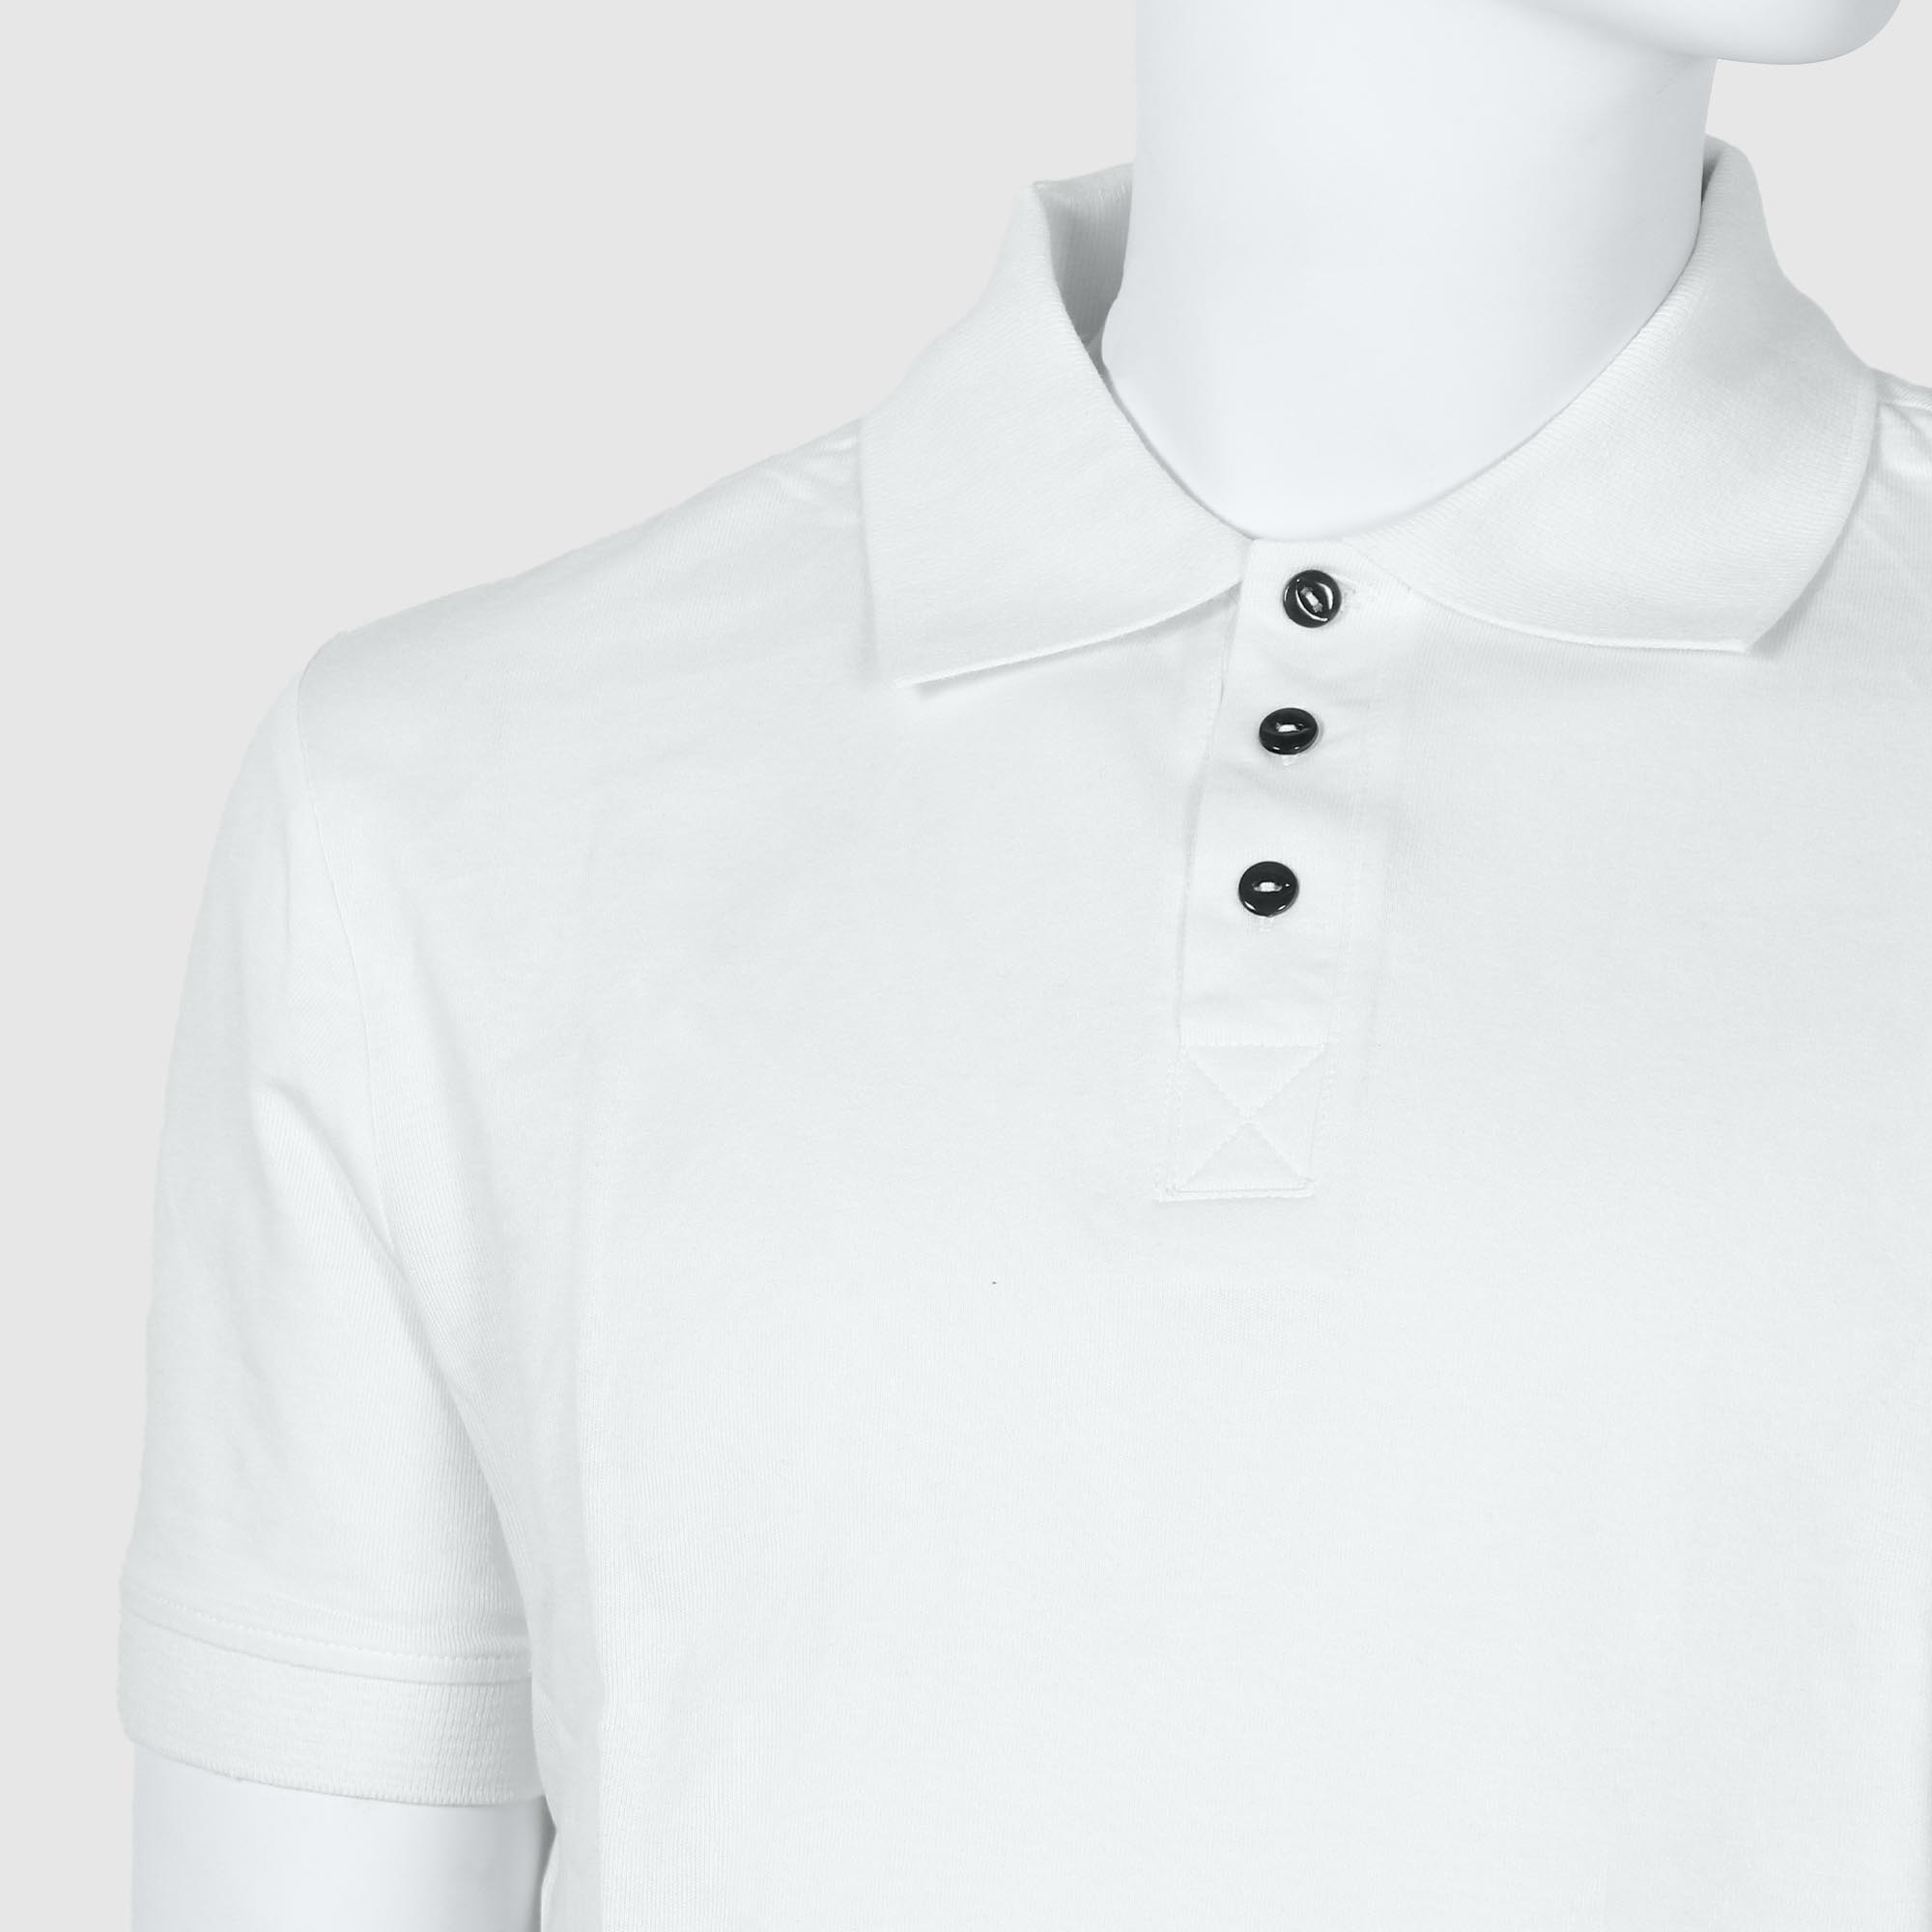 Мужская футболка-поло Diva Teks белая (DTD-07), цвет белый, размер 46-48 - фото 3